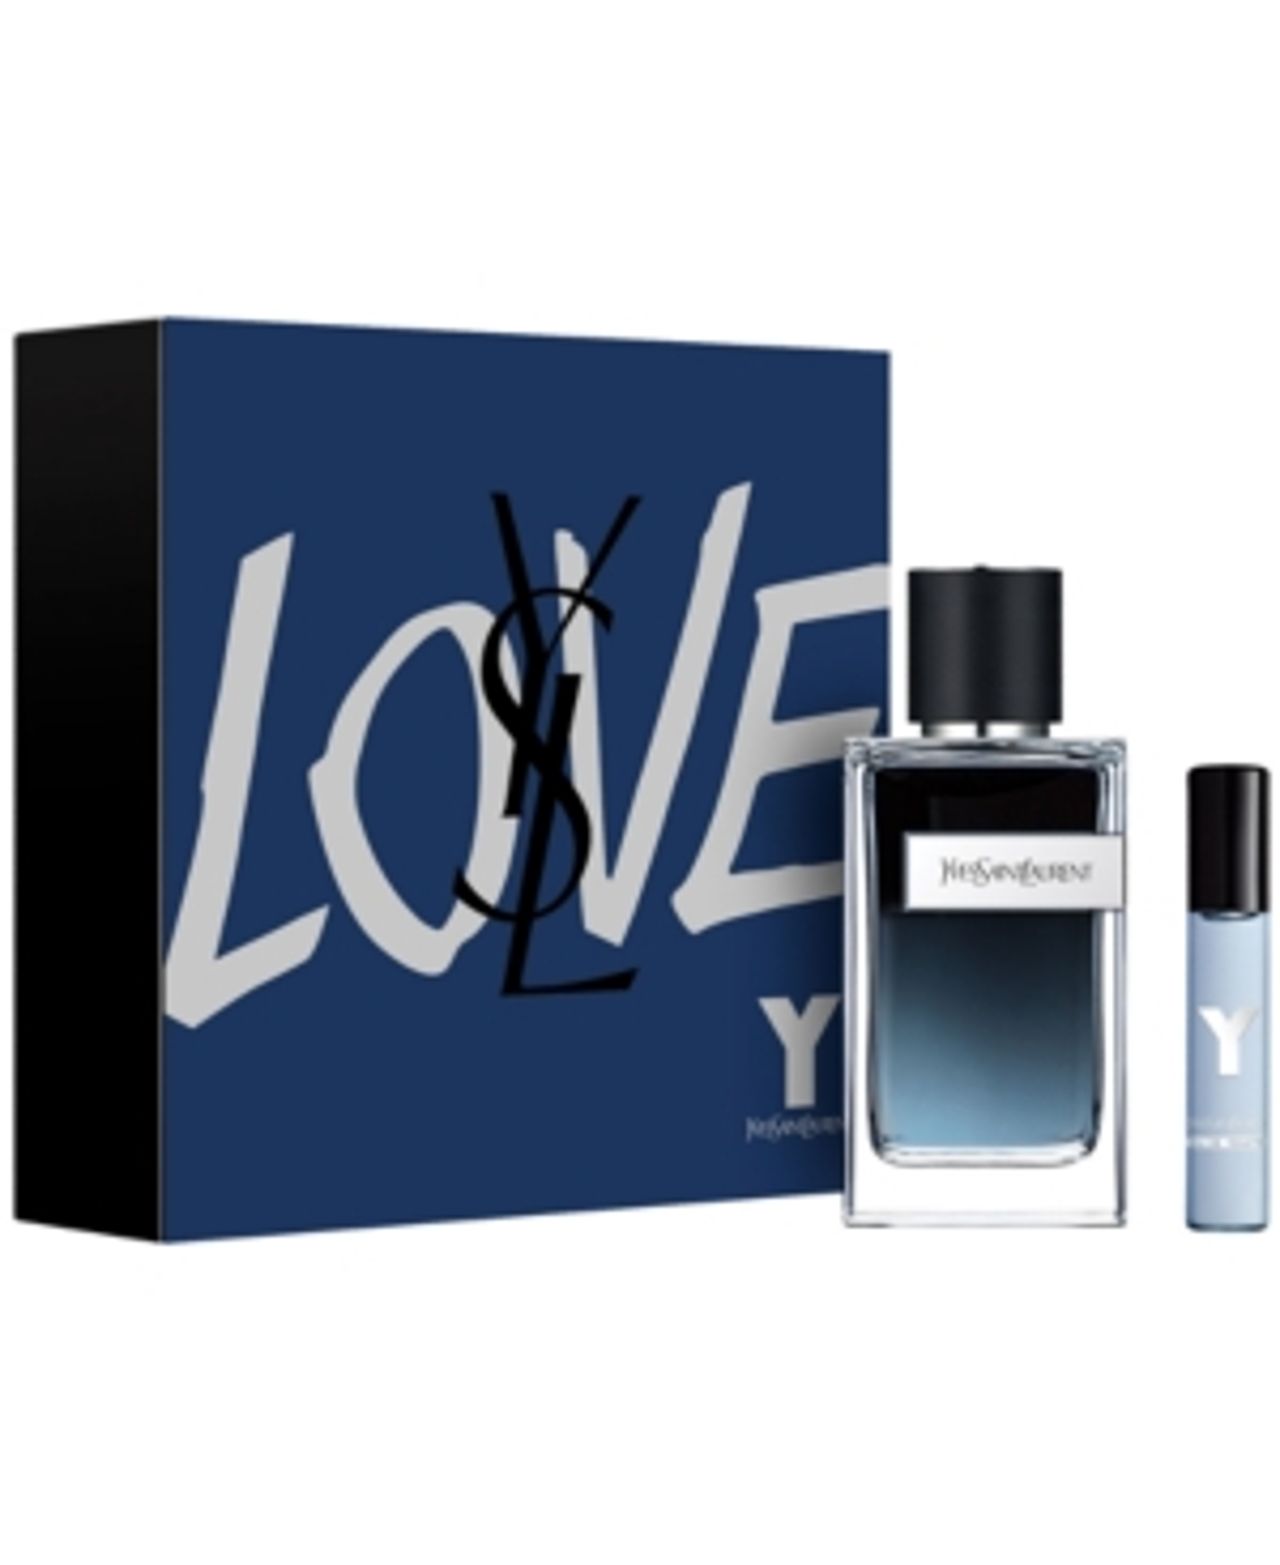 Yves Saint Laurent Men S 2 Pc Y Eau De Parfum Gift Set Macys Style Crew